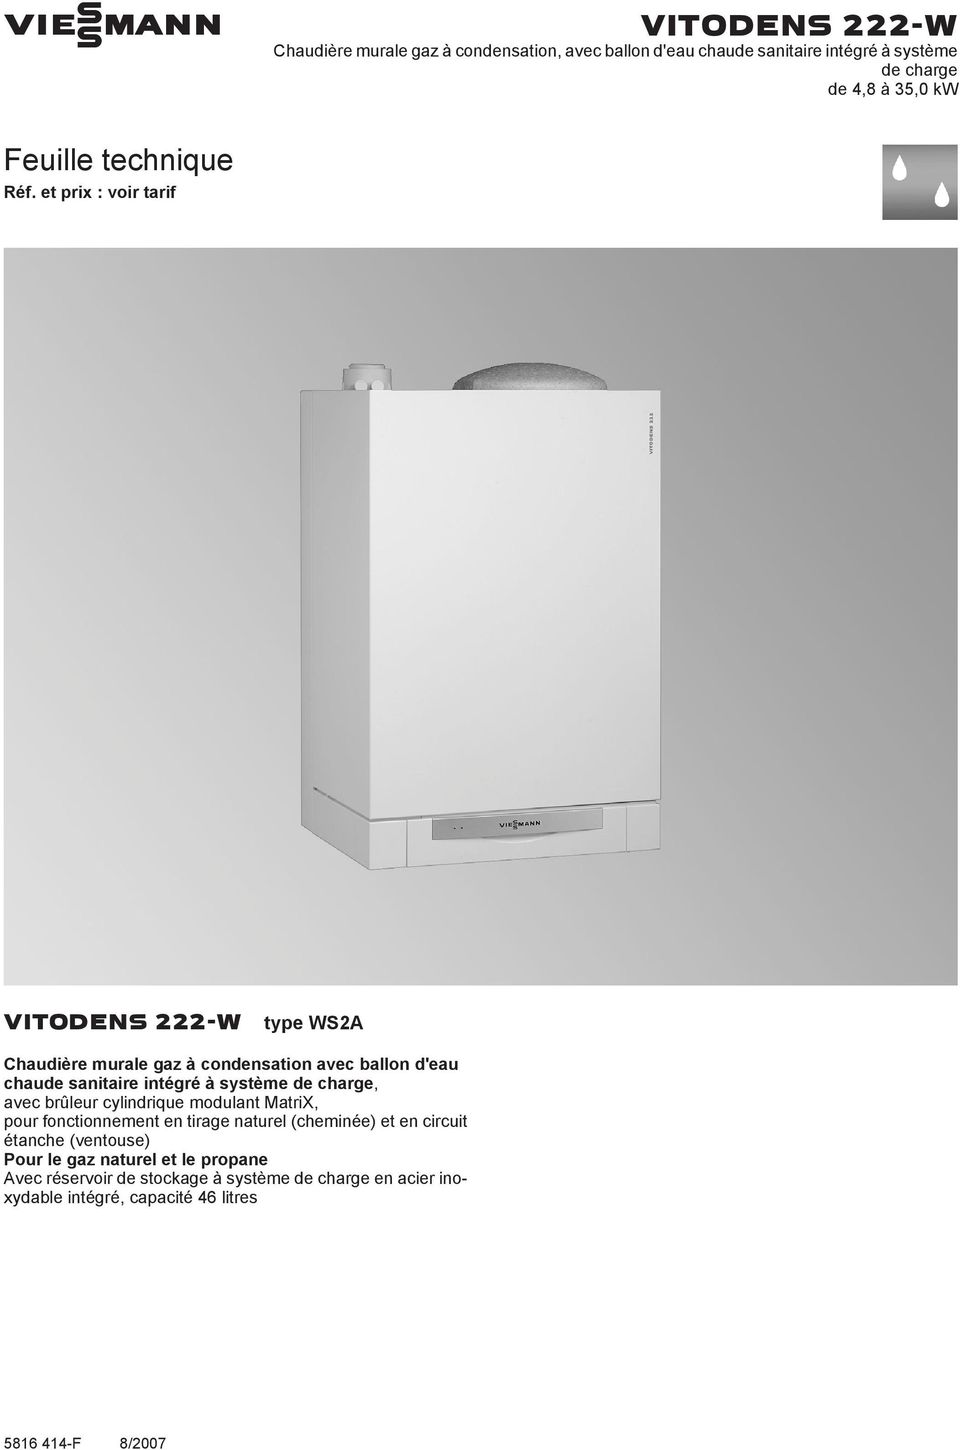 VIESMANN VITODENS 222-W Chaudière murale gaz à condensation, avec ballon  d'eau chaude sanitaire intégré à système de charge de 4,8 à 35,0 kw - PDF  Téléchargement Gratuit